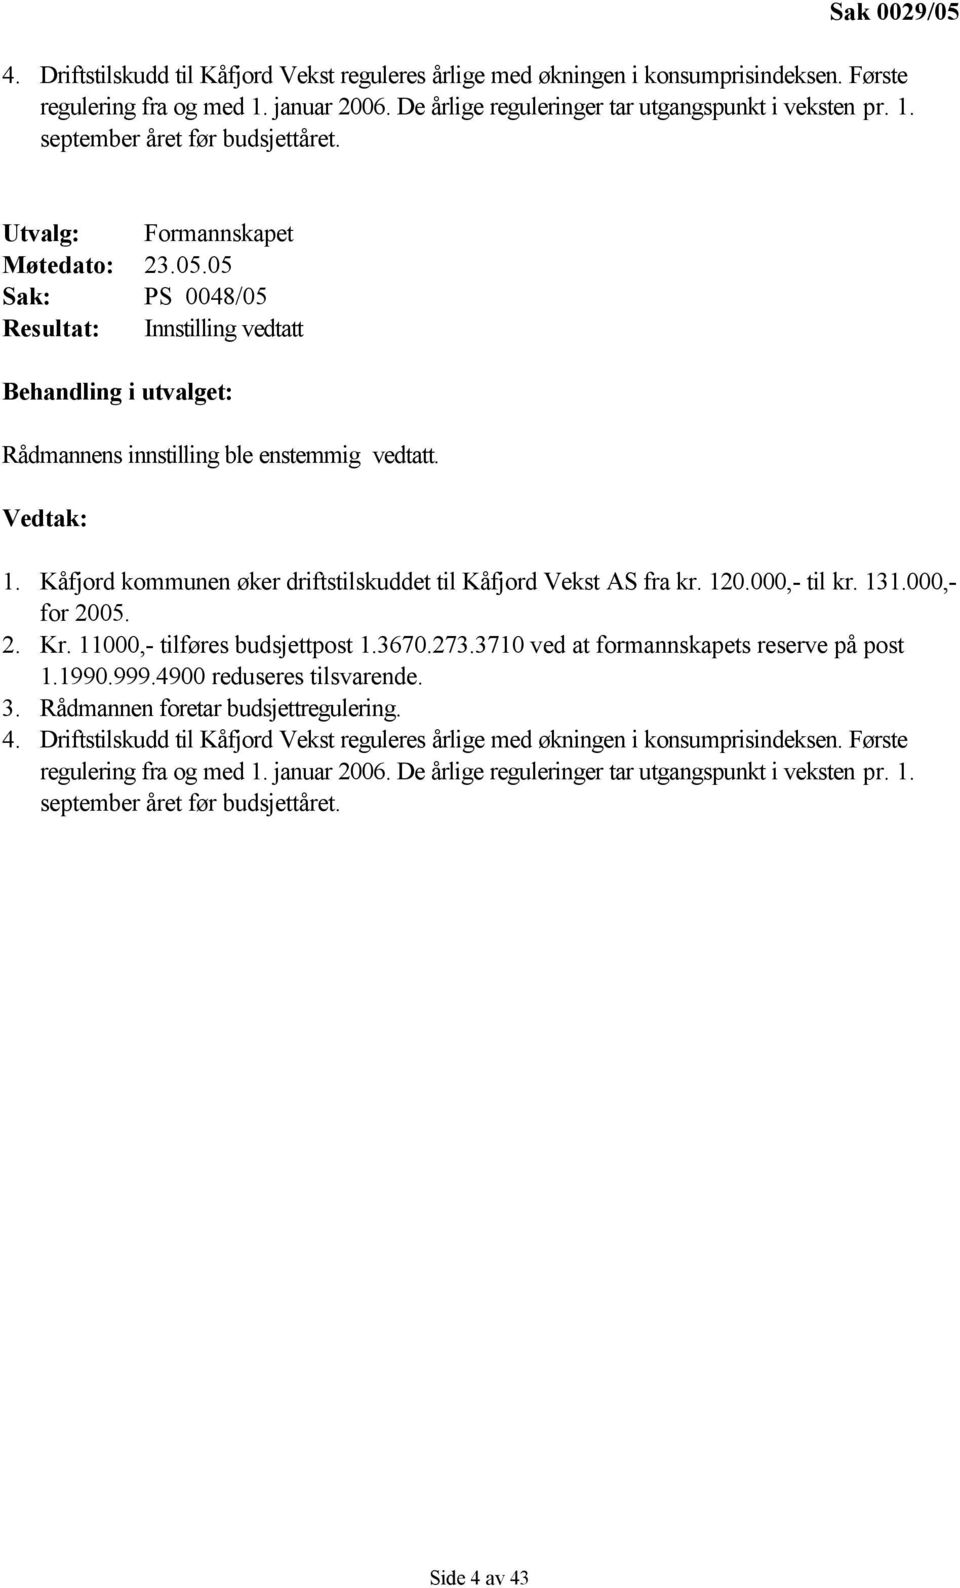 Vedtak: 1. n øker driftstilskuddet til Kåfjord Vekst AS fra kr. 120.000,- til kr. 131.000,- for 2005. 2. Kr. 11000,- tilføres budsjettpost 1.3670.273.3710 ved at formannskapets reserve på post 1.1990.